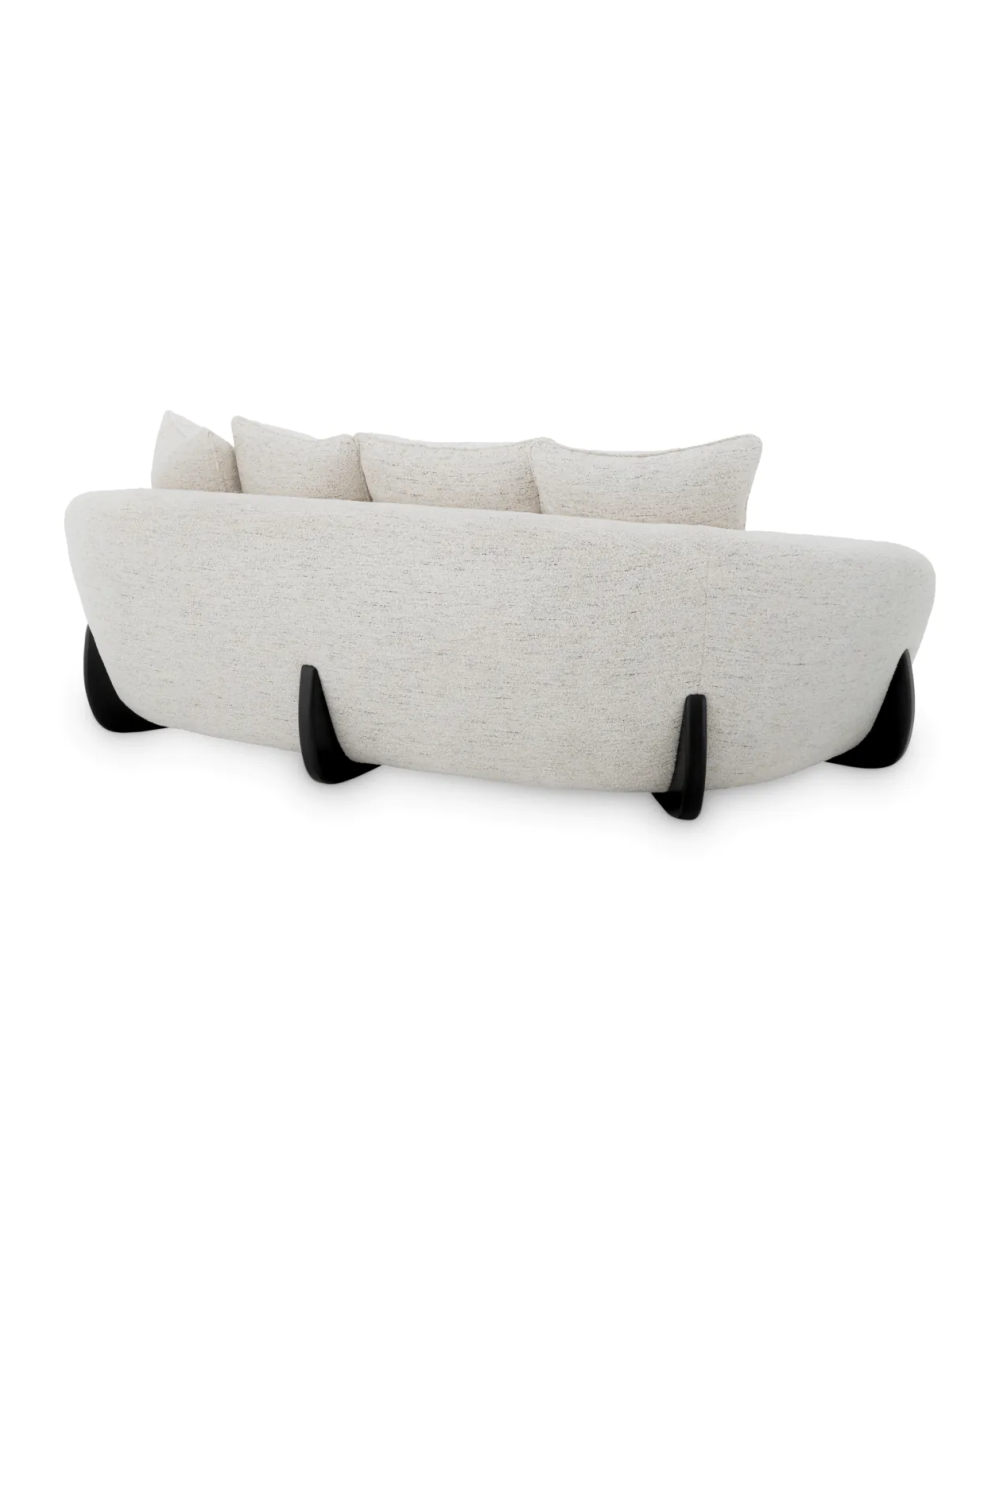 White Curved Sofa | Eichholtz Siderno | Oroa.com